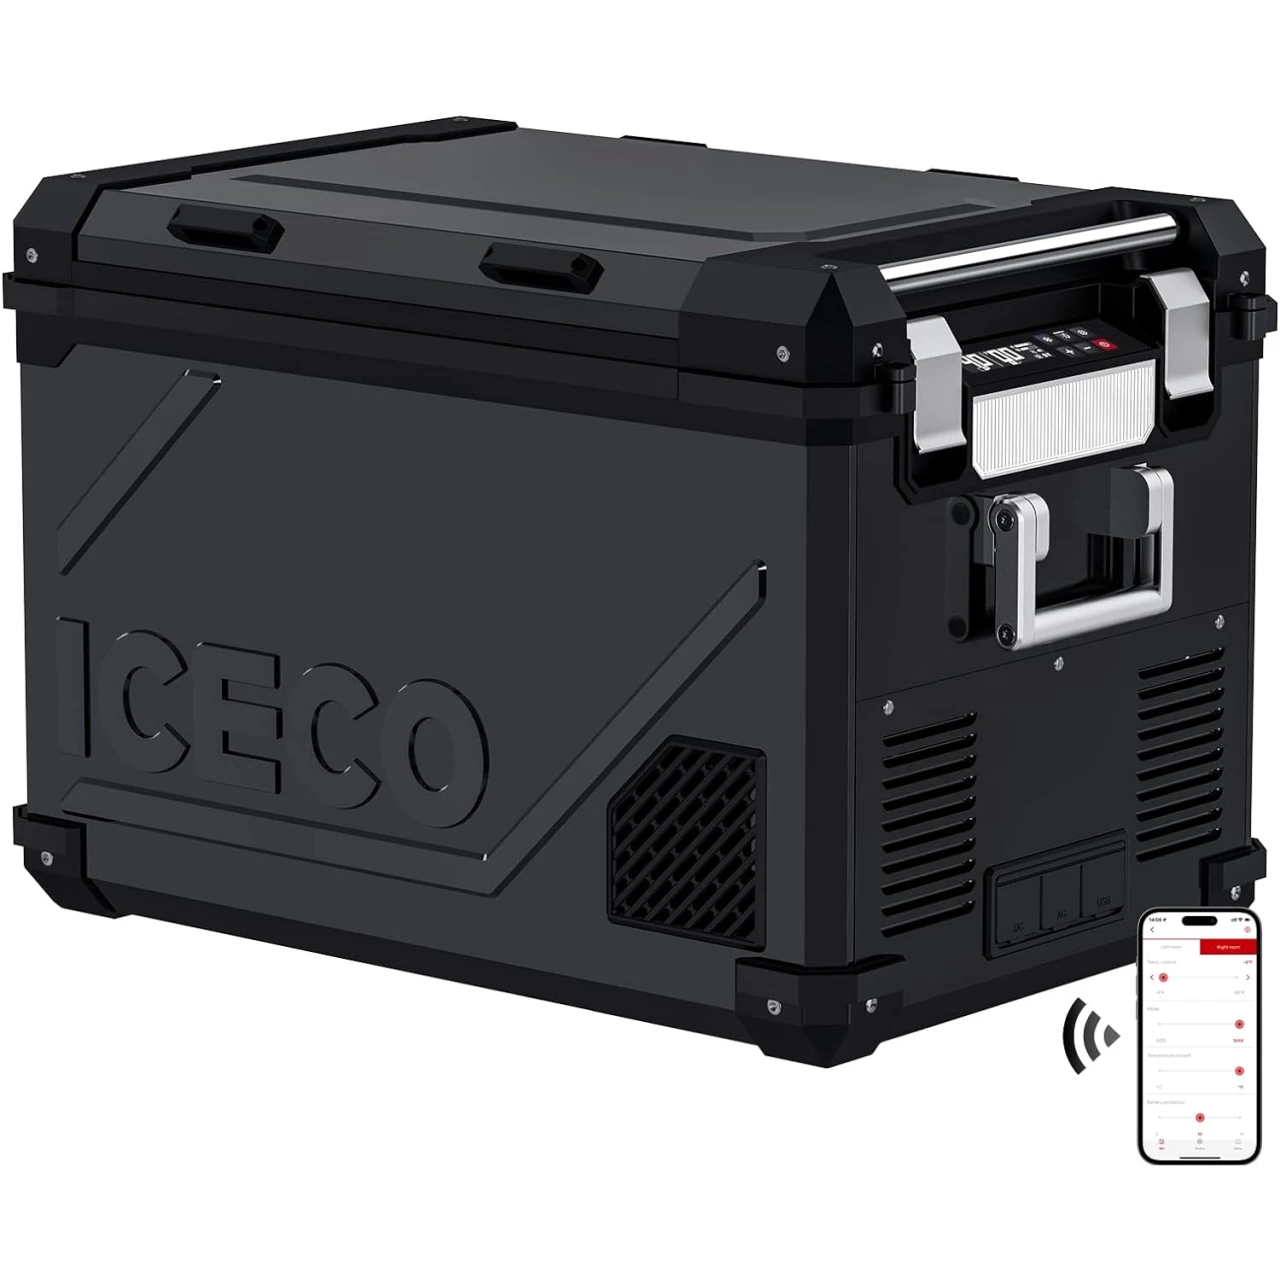 ICECO APL55 Dual Zone Portable Refrigerator Freezer Bluetooth Controlled, 55 Liter 12v refrigerator with SECOP Compressor, DC 12/24V, AC 110-240V, for Truck, Car and Home, -4℉~68℉ (Black)